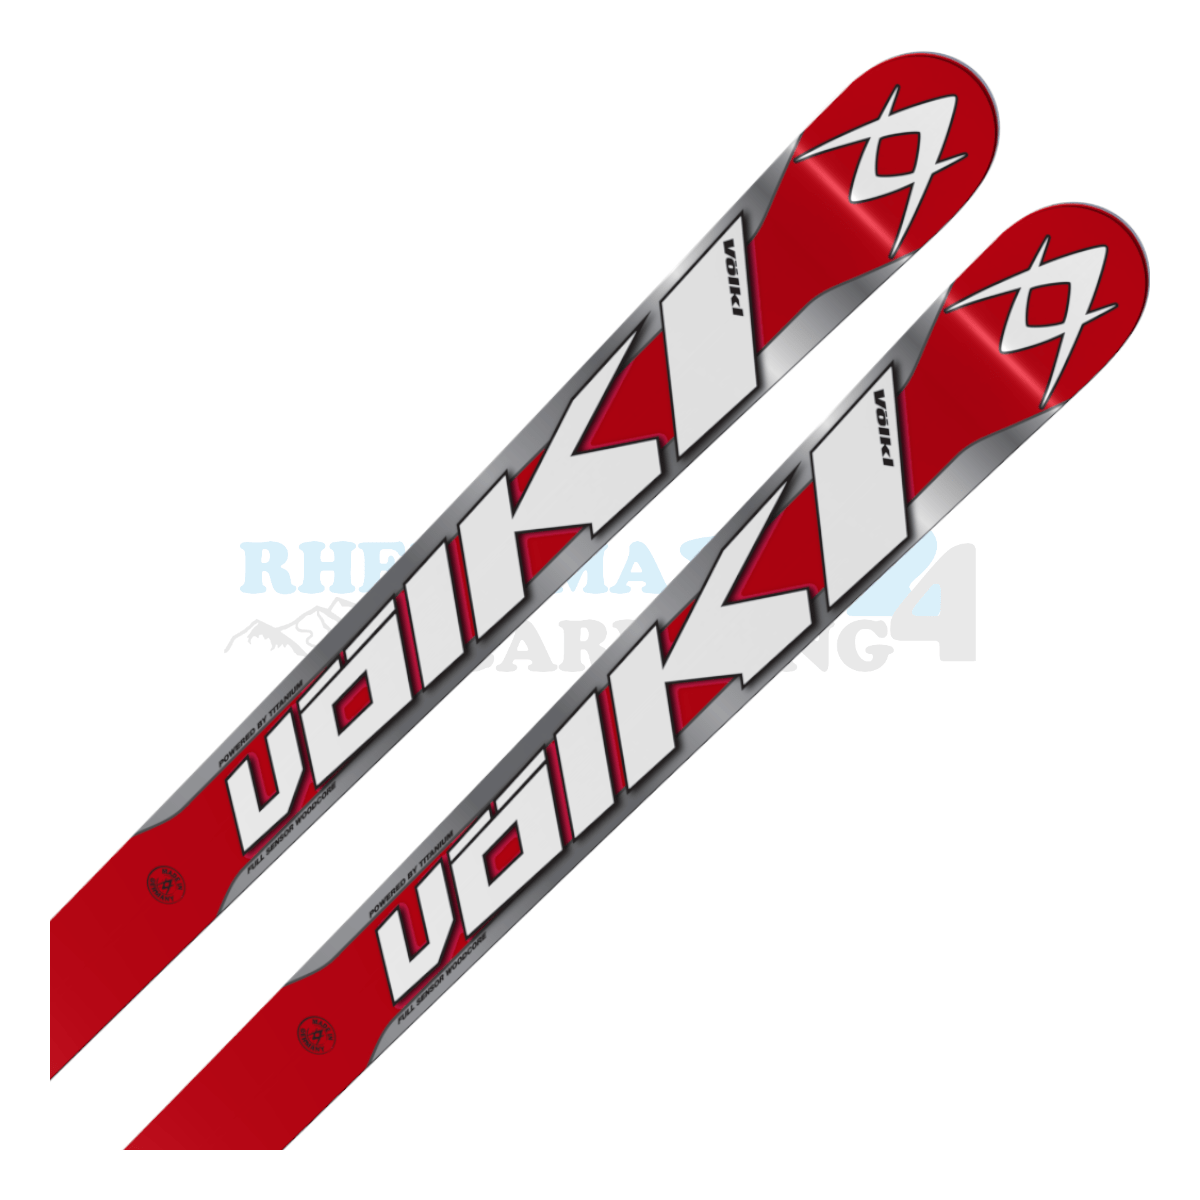 Völkl Racetiger Super-G in der Farbe rot-silber, Ansicht des oberen Teils des Skis